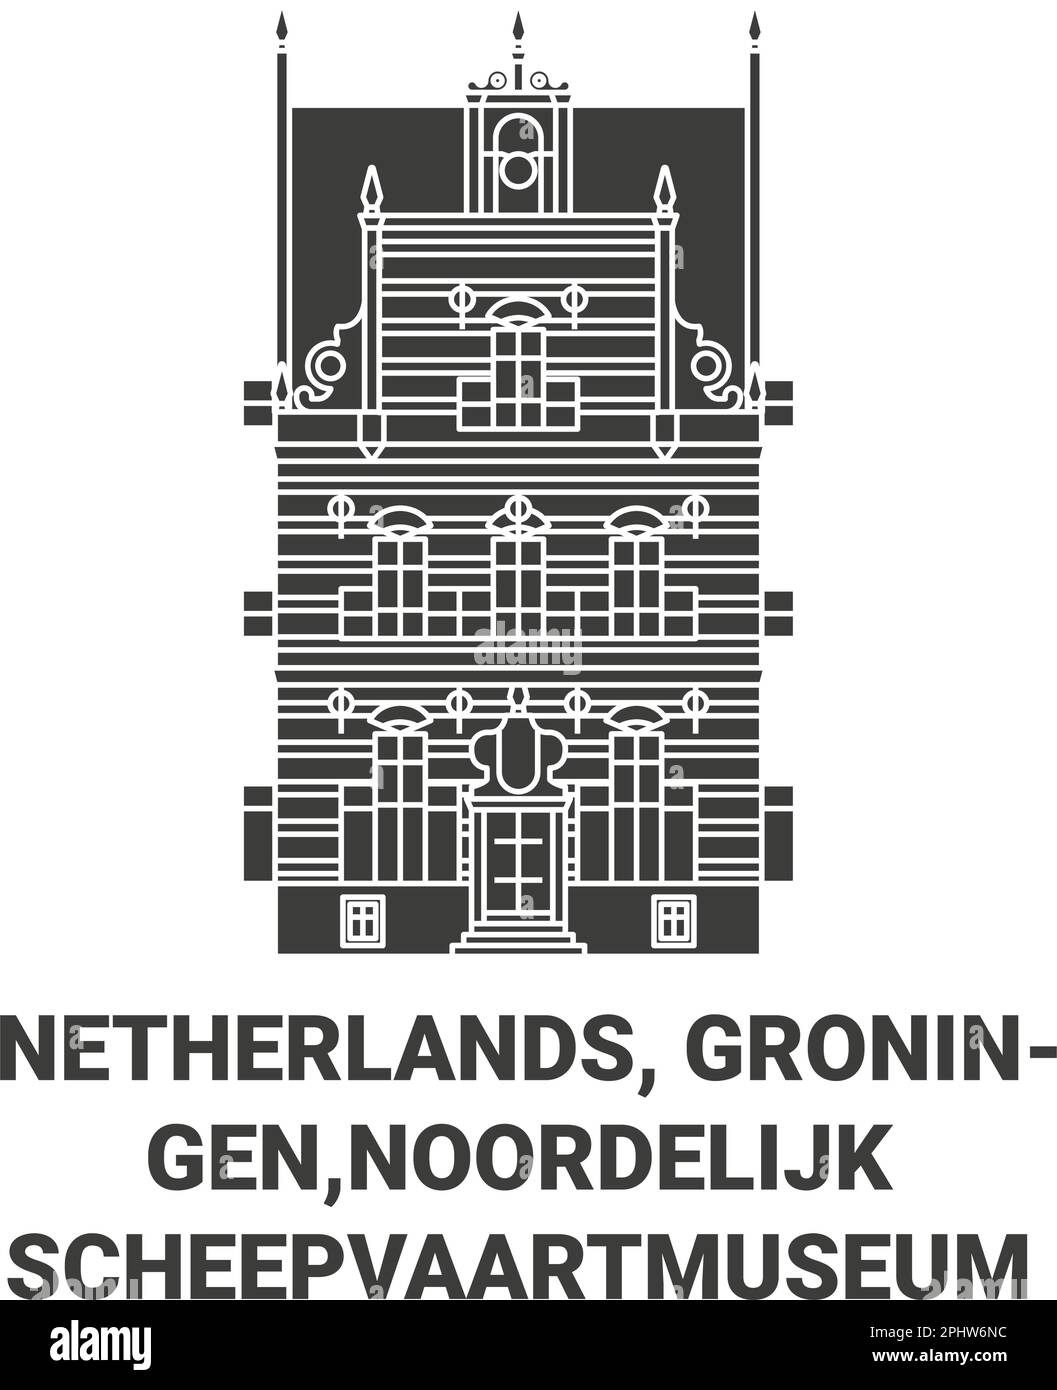 Niederlande, Groningen, Noordelijk Scheepvaartmuseum reisen Wahrzeichen Vektordarstellung Stock Vektor